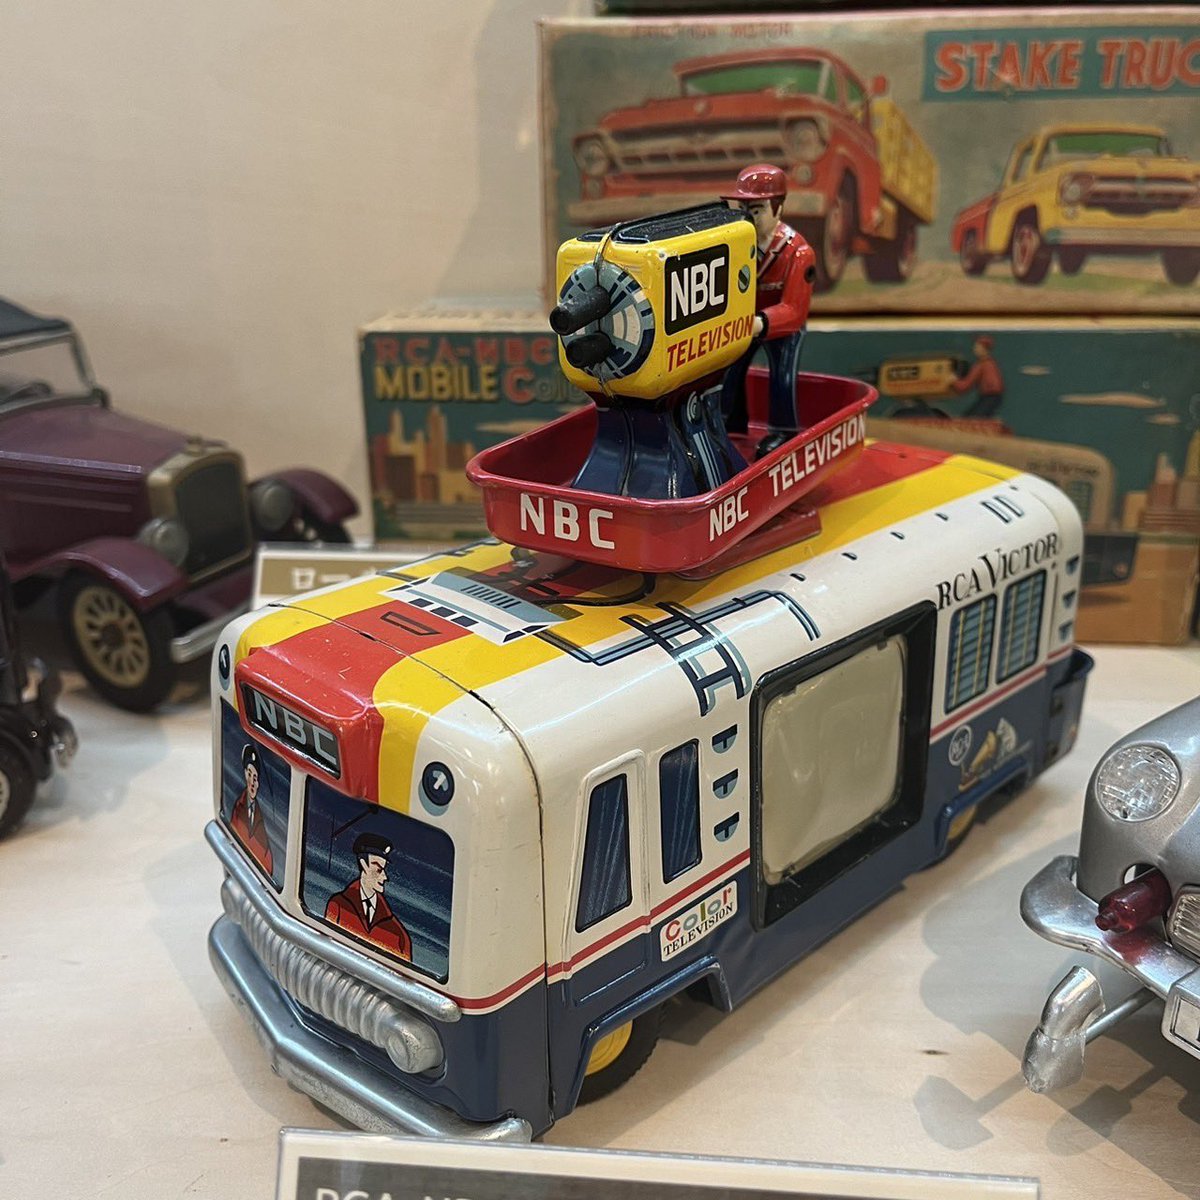 こんにちは☔️出雲崎レトロミュージアムです🤖✨️

本日ご紹介するのは1950年代に米澤玩具が製造、CRAGSTANが販売した乾電池式ブリキ玩具【RCA-NBCテレビのビクター中継車】です📺
パトカーや消防車の玩具はよく見かけますが、テレビ中継車の玩具は珍しいですね👀